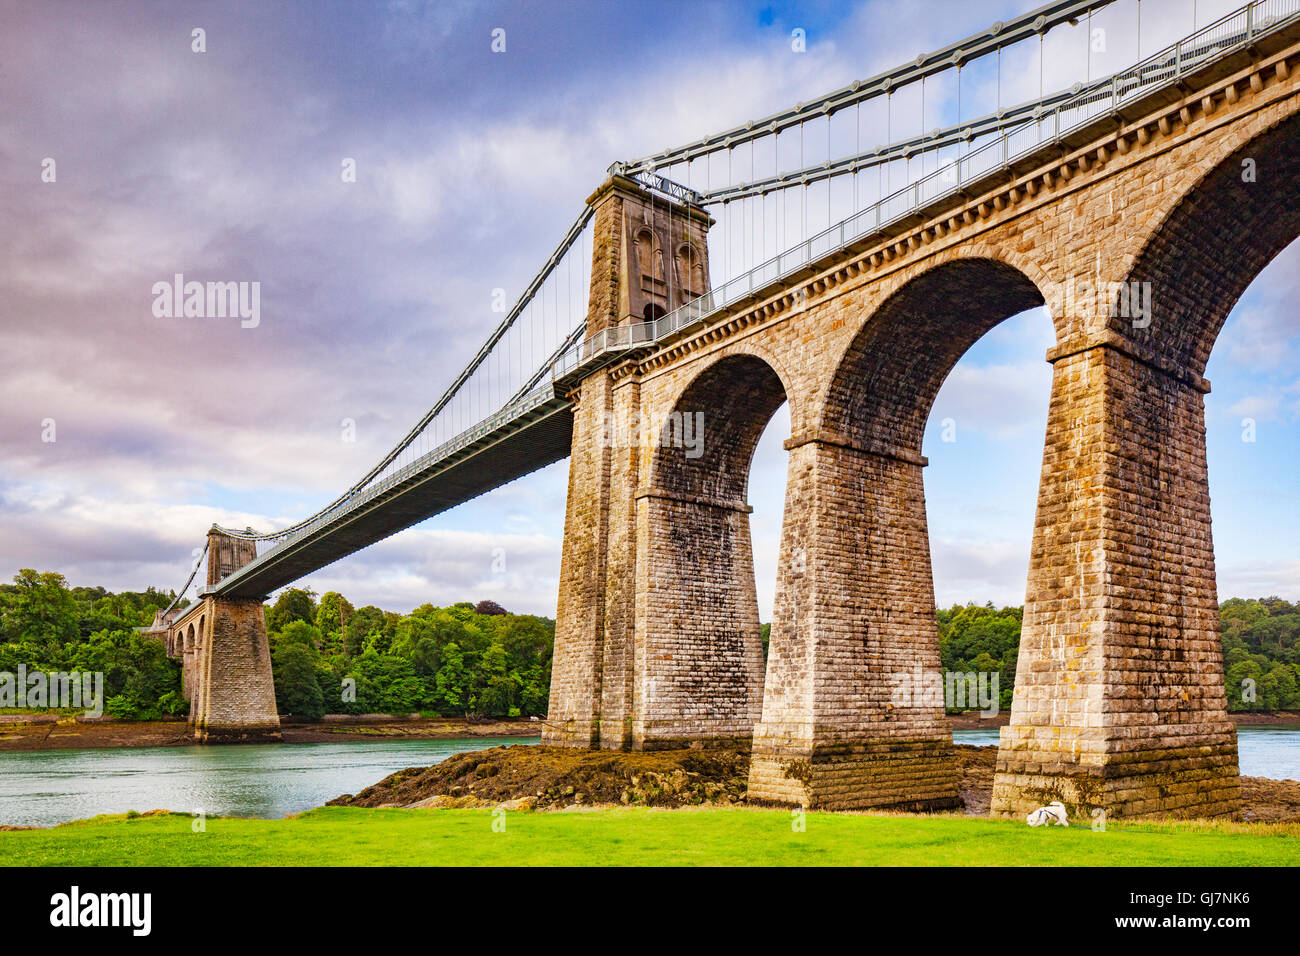 Menai Aufhebung-Brücke, überqueren die Menai Straits, entworfen von Thomas Telford, Anglesey, Wales, UK Stockfoto